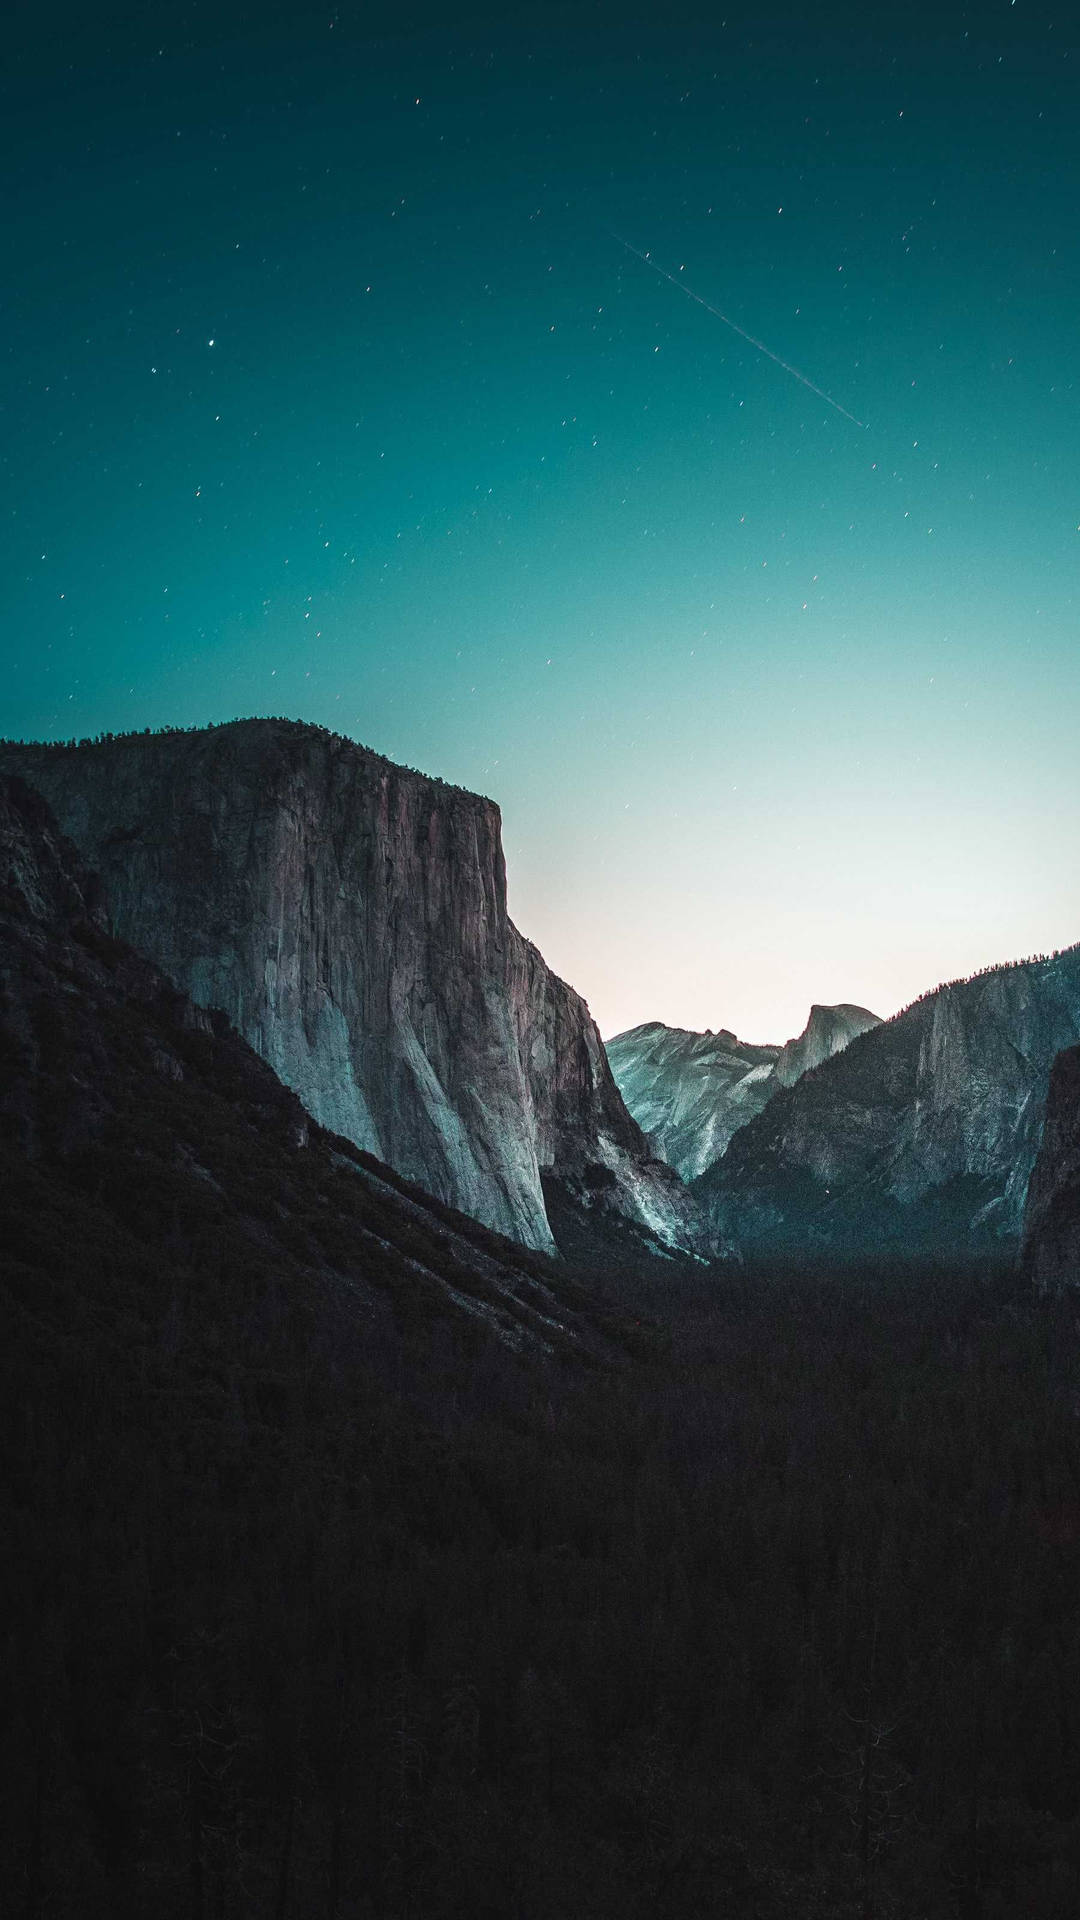 Ståendehög - Utforskar Yosemite National Park På En Iphone. Wallpaper